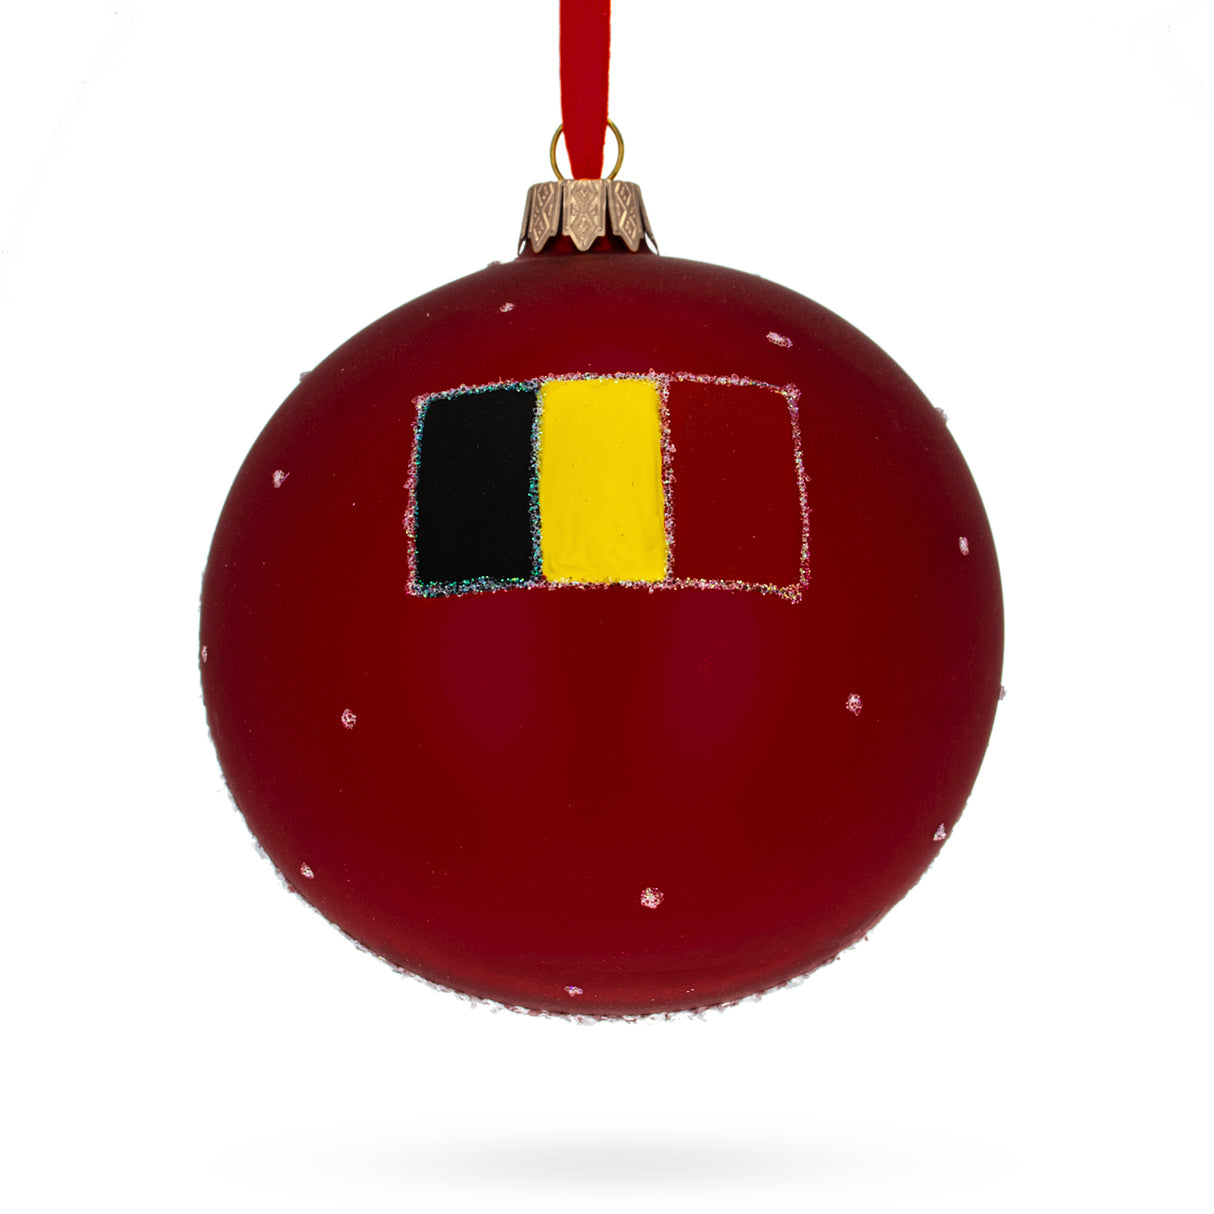 Buy Christmas Ornaments > Travel > Europe > Belgium by BestPysanky Online Gift Ship